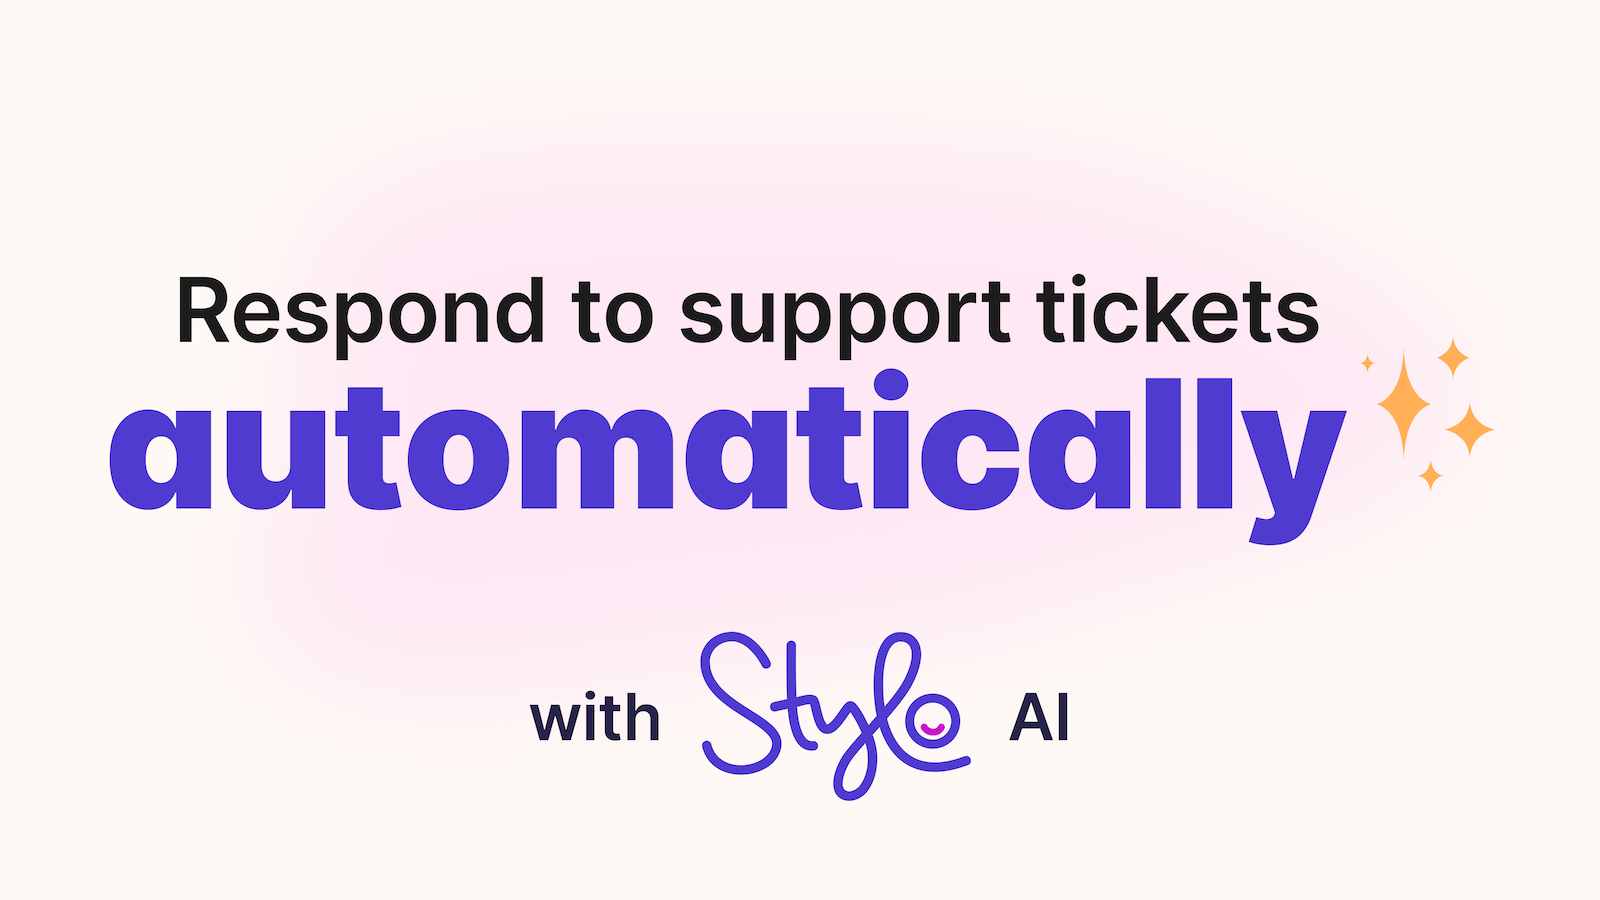 Antworten Sie automatisch auf Support-Tickets mit Stylo KI